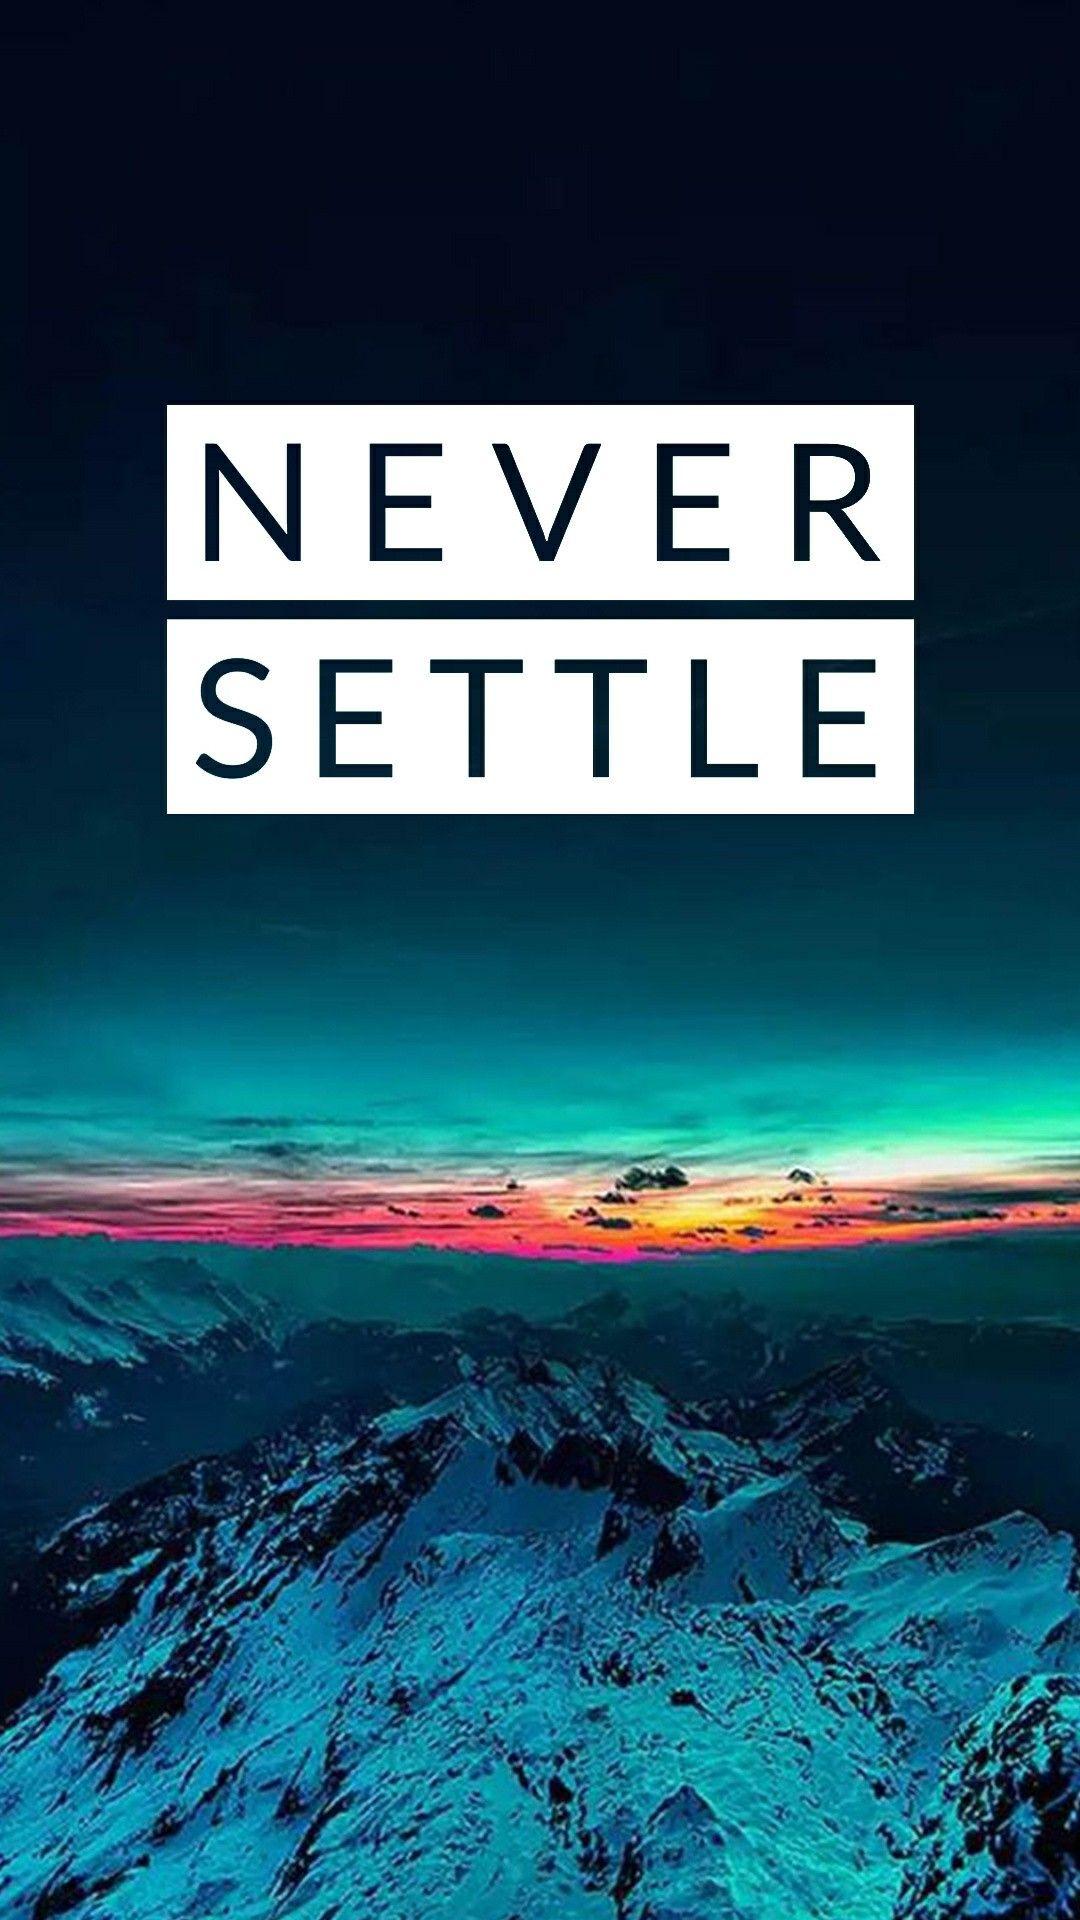 Never settle. Never settle wallpaper, Oneplus wallpaper